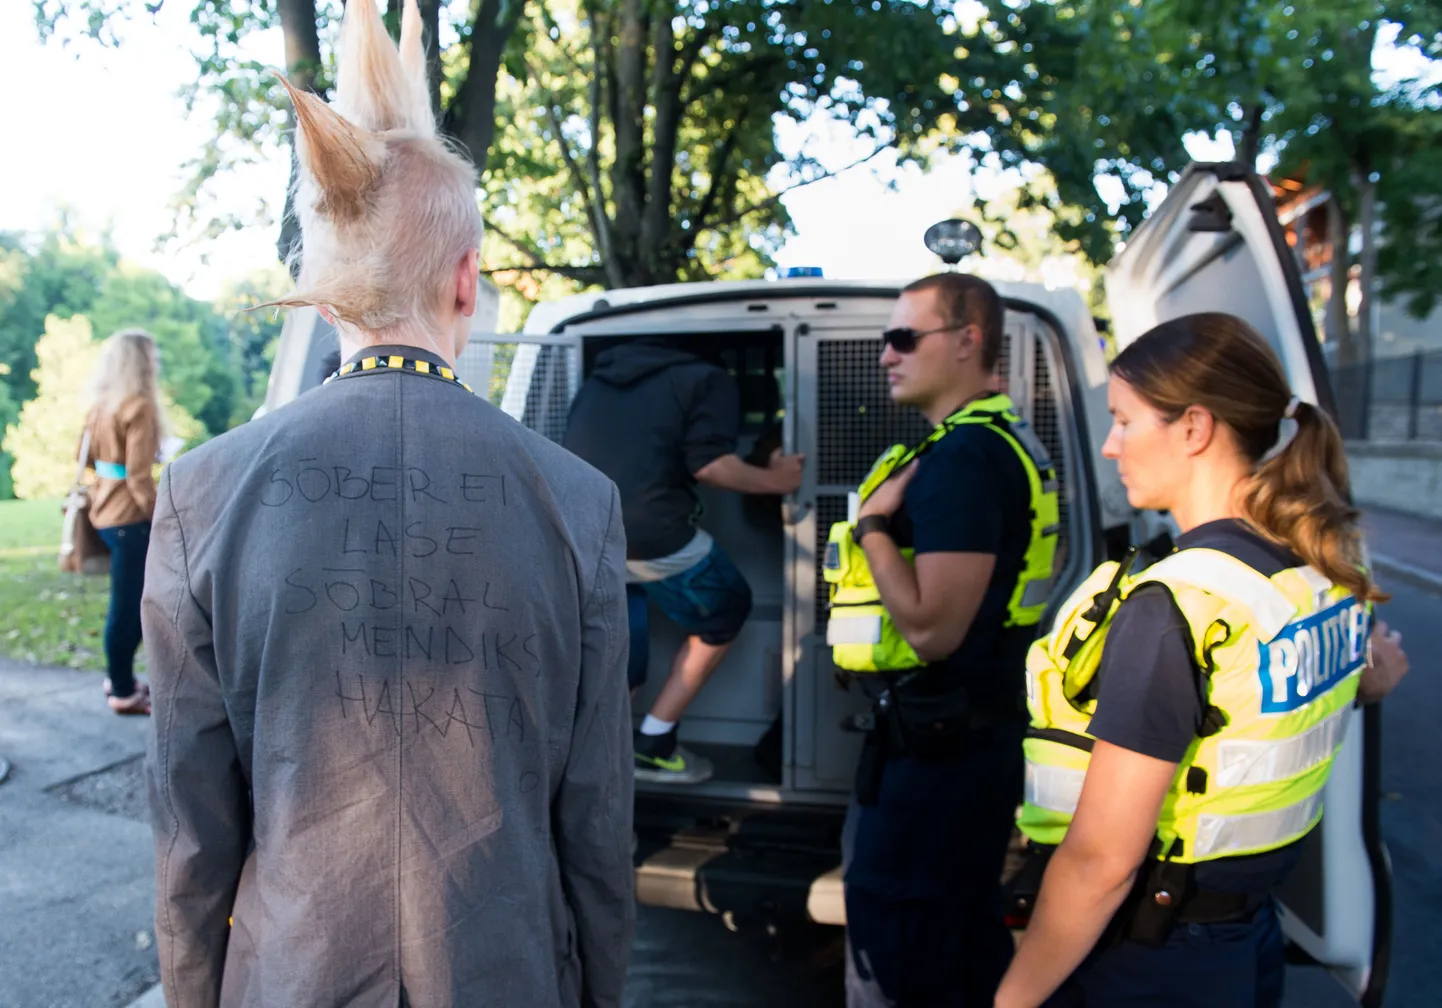 Kesklinna politseijaoskonna noorsoopolitsei ametnikud patrullisid reede Ãµhtul Tallinna kesklinnas otsides alkoholi tarvitavaid alaealisi.